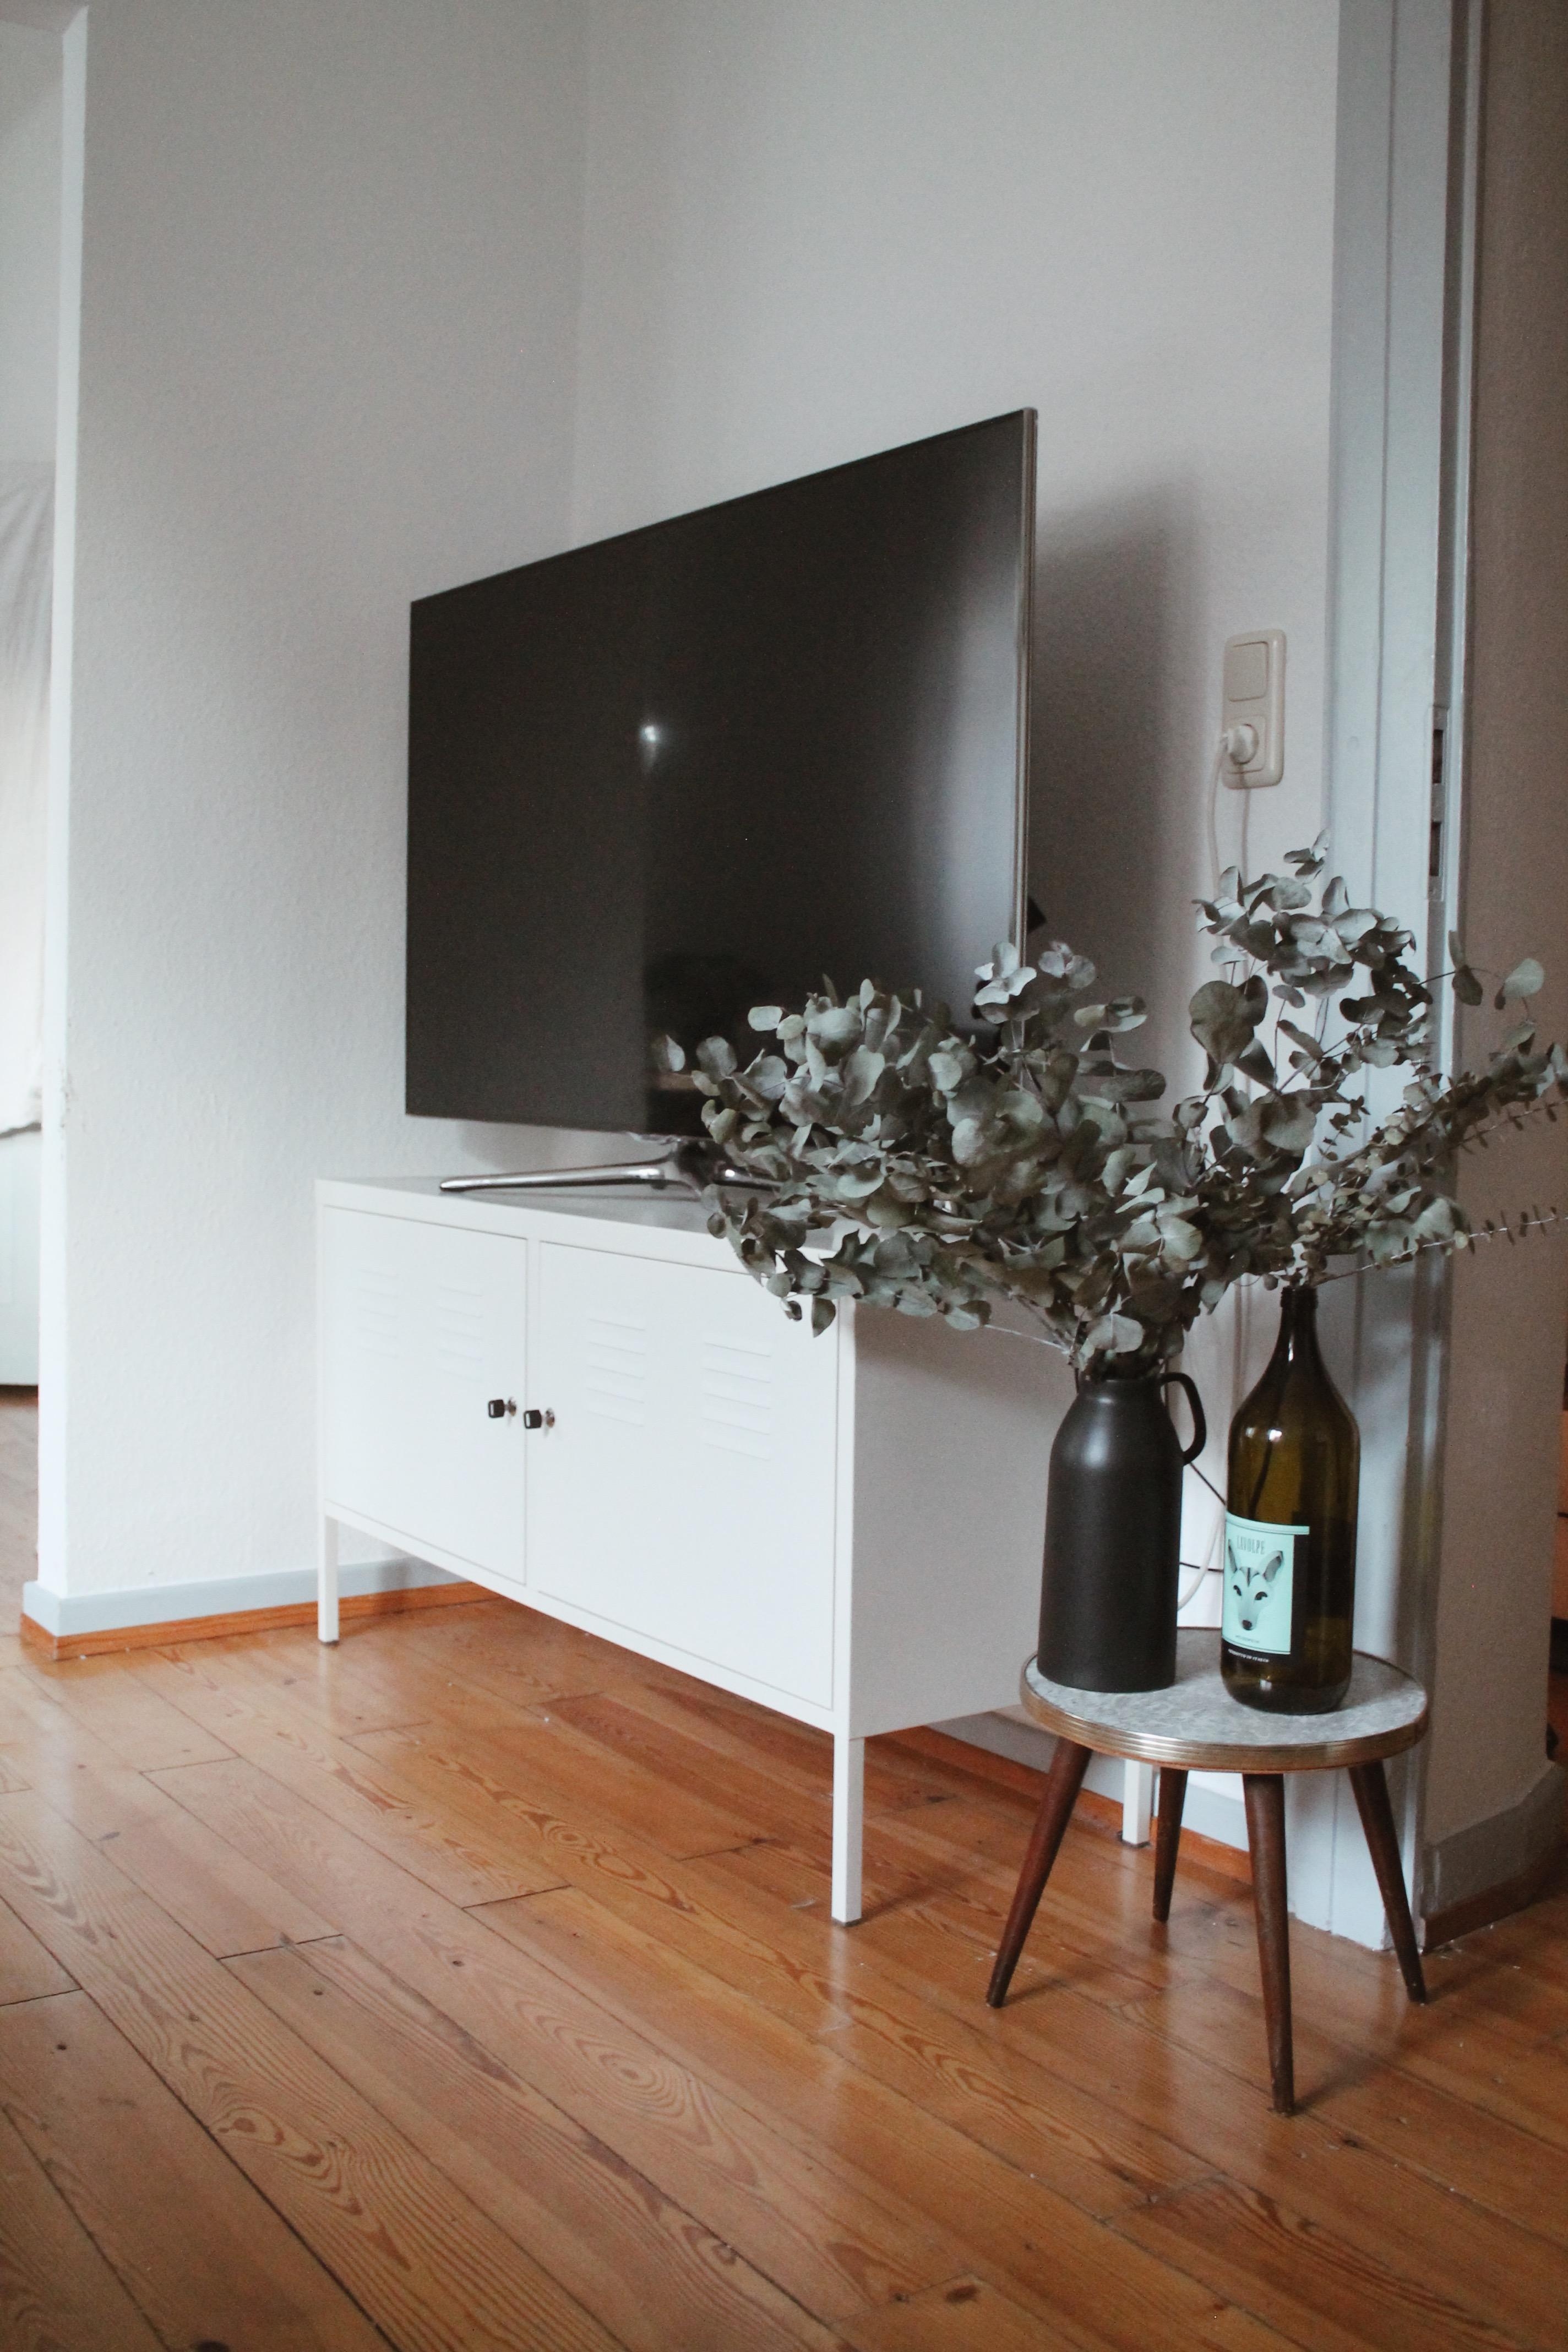 Vielleicht darf ja bald eins aus Holz einziehen #sideboard #livingchallenge #tvboard #livingroom #couchstyle